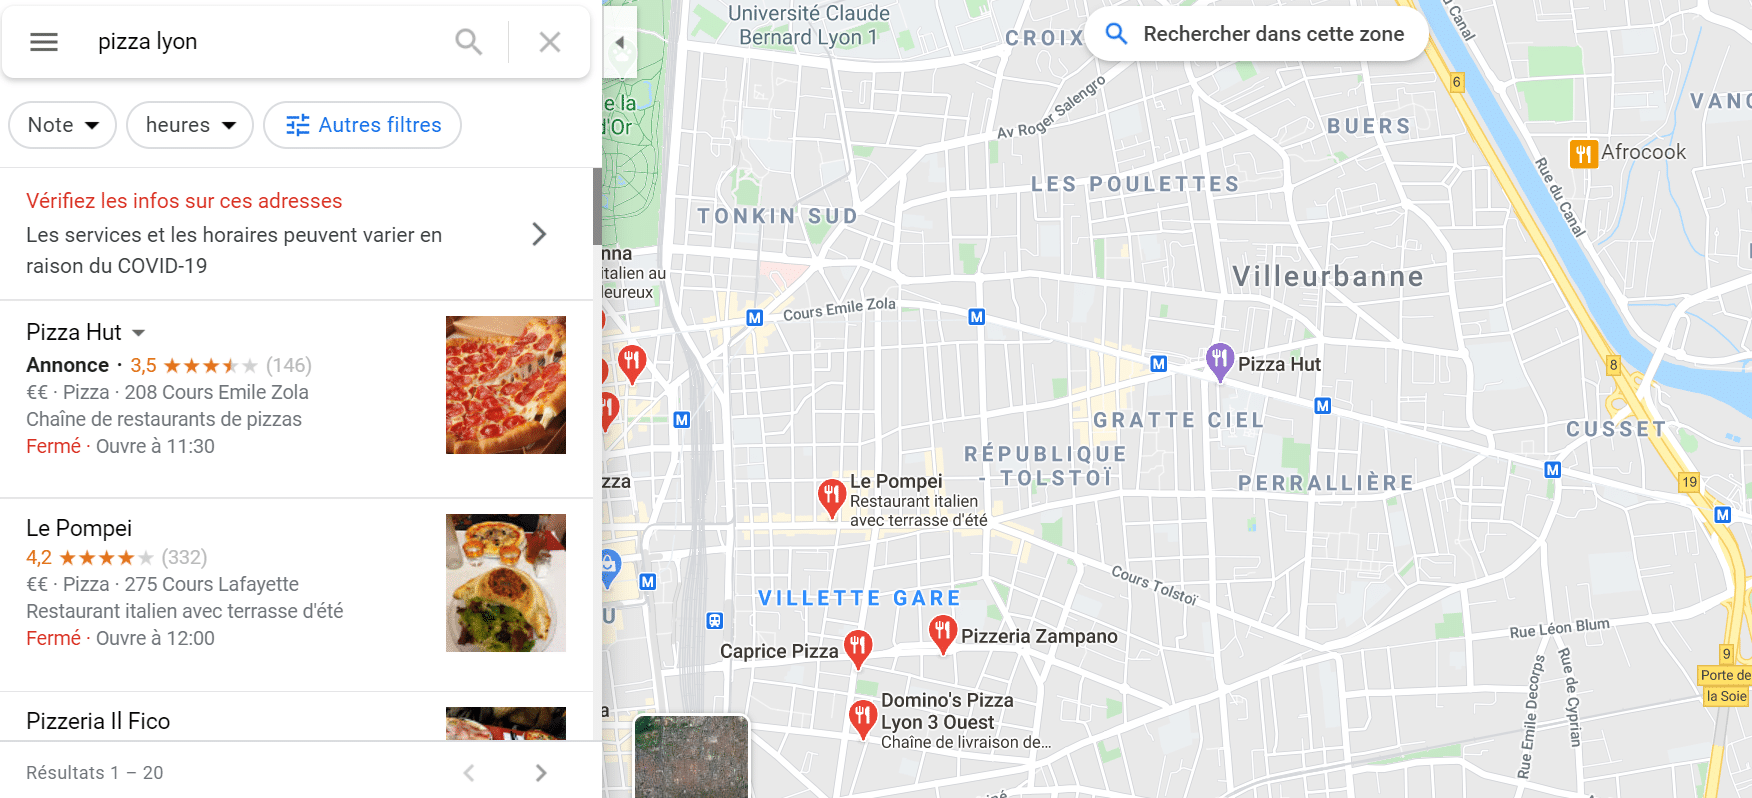 Exemple d'annonce Google Maps